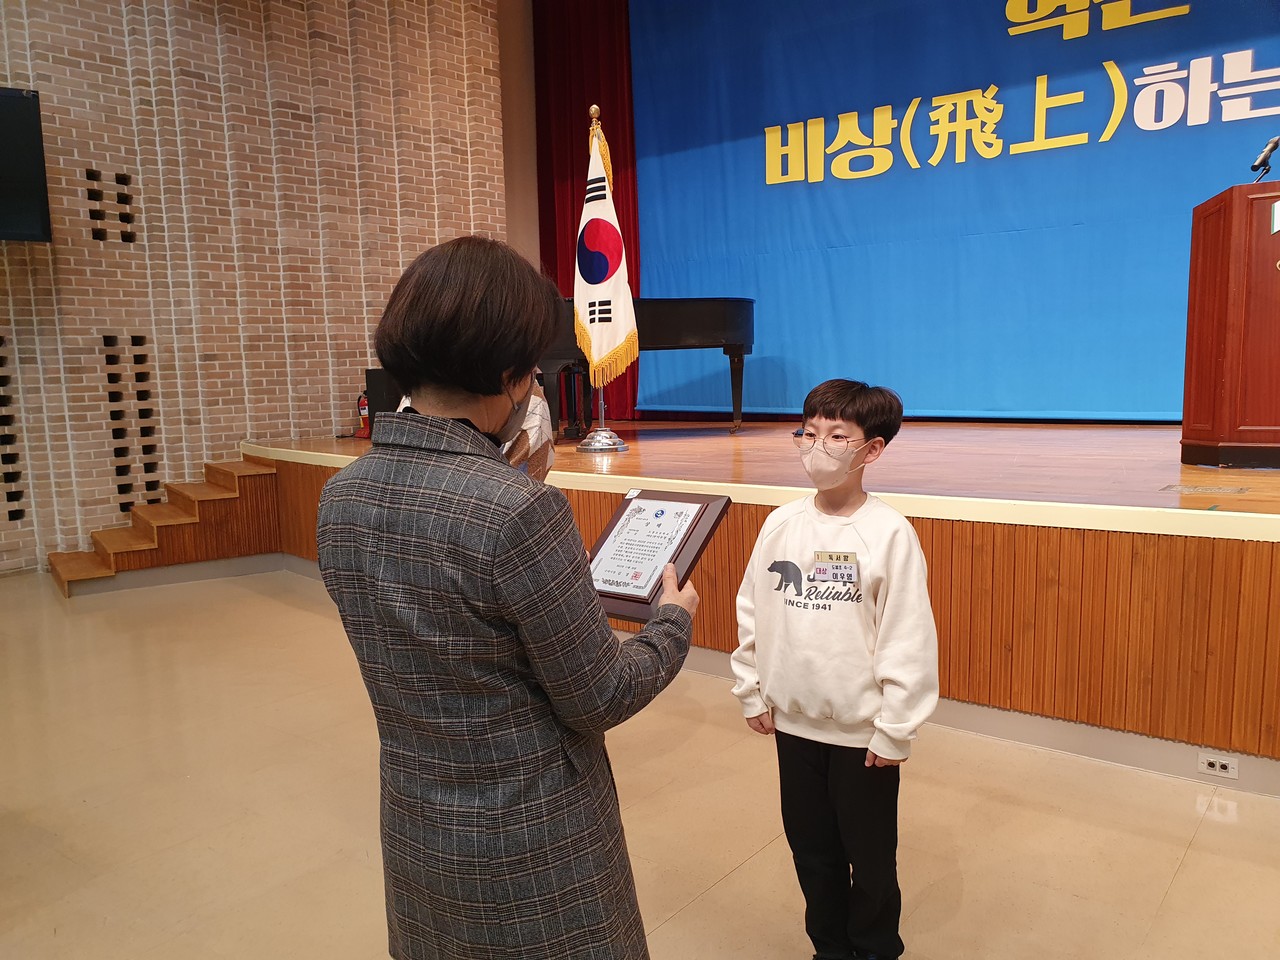 제19회 구미시어린이독서왕 선발대회에서 도봉초등학교 4학년 이우영 학생이 대상을 수상했다.